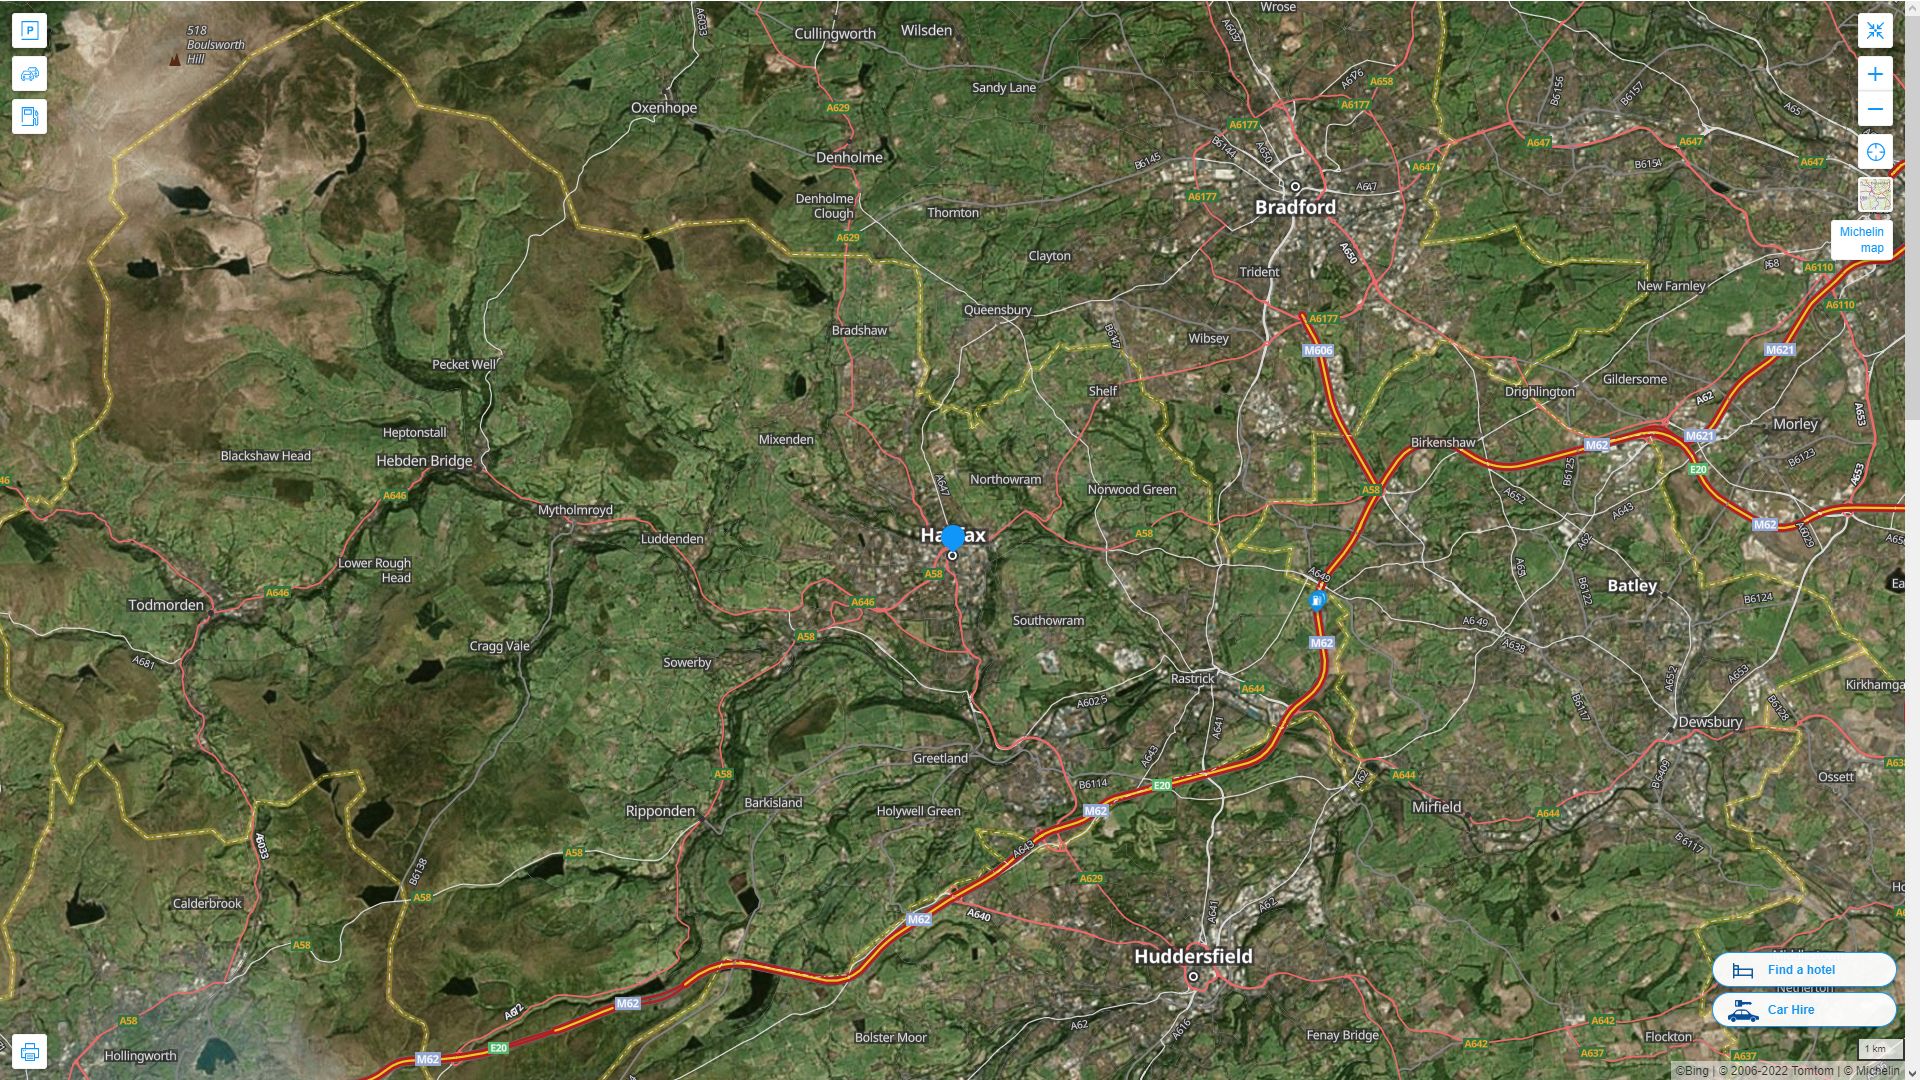 Halifax Royaume Uni Autoroute et carte routiere avec vue satellite